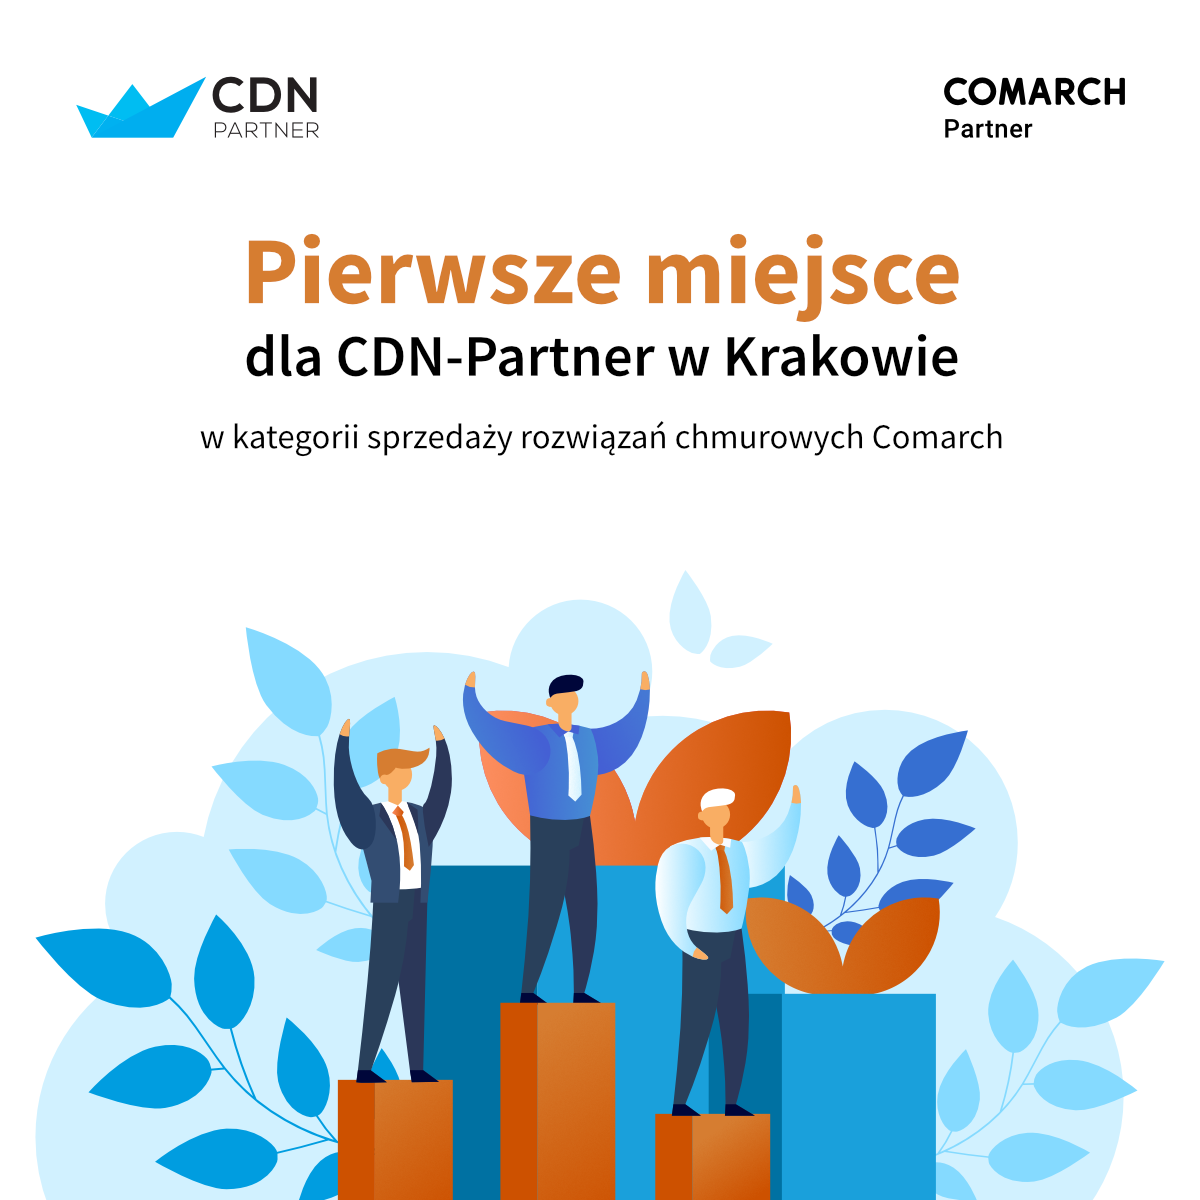 Pierwsze miejsce dla firmy CDN-Partner w Krakowie w kategorii sprzedaży rozwiązań chmurowych Comarch